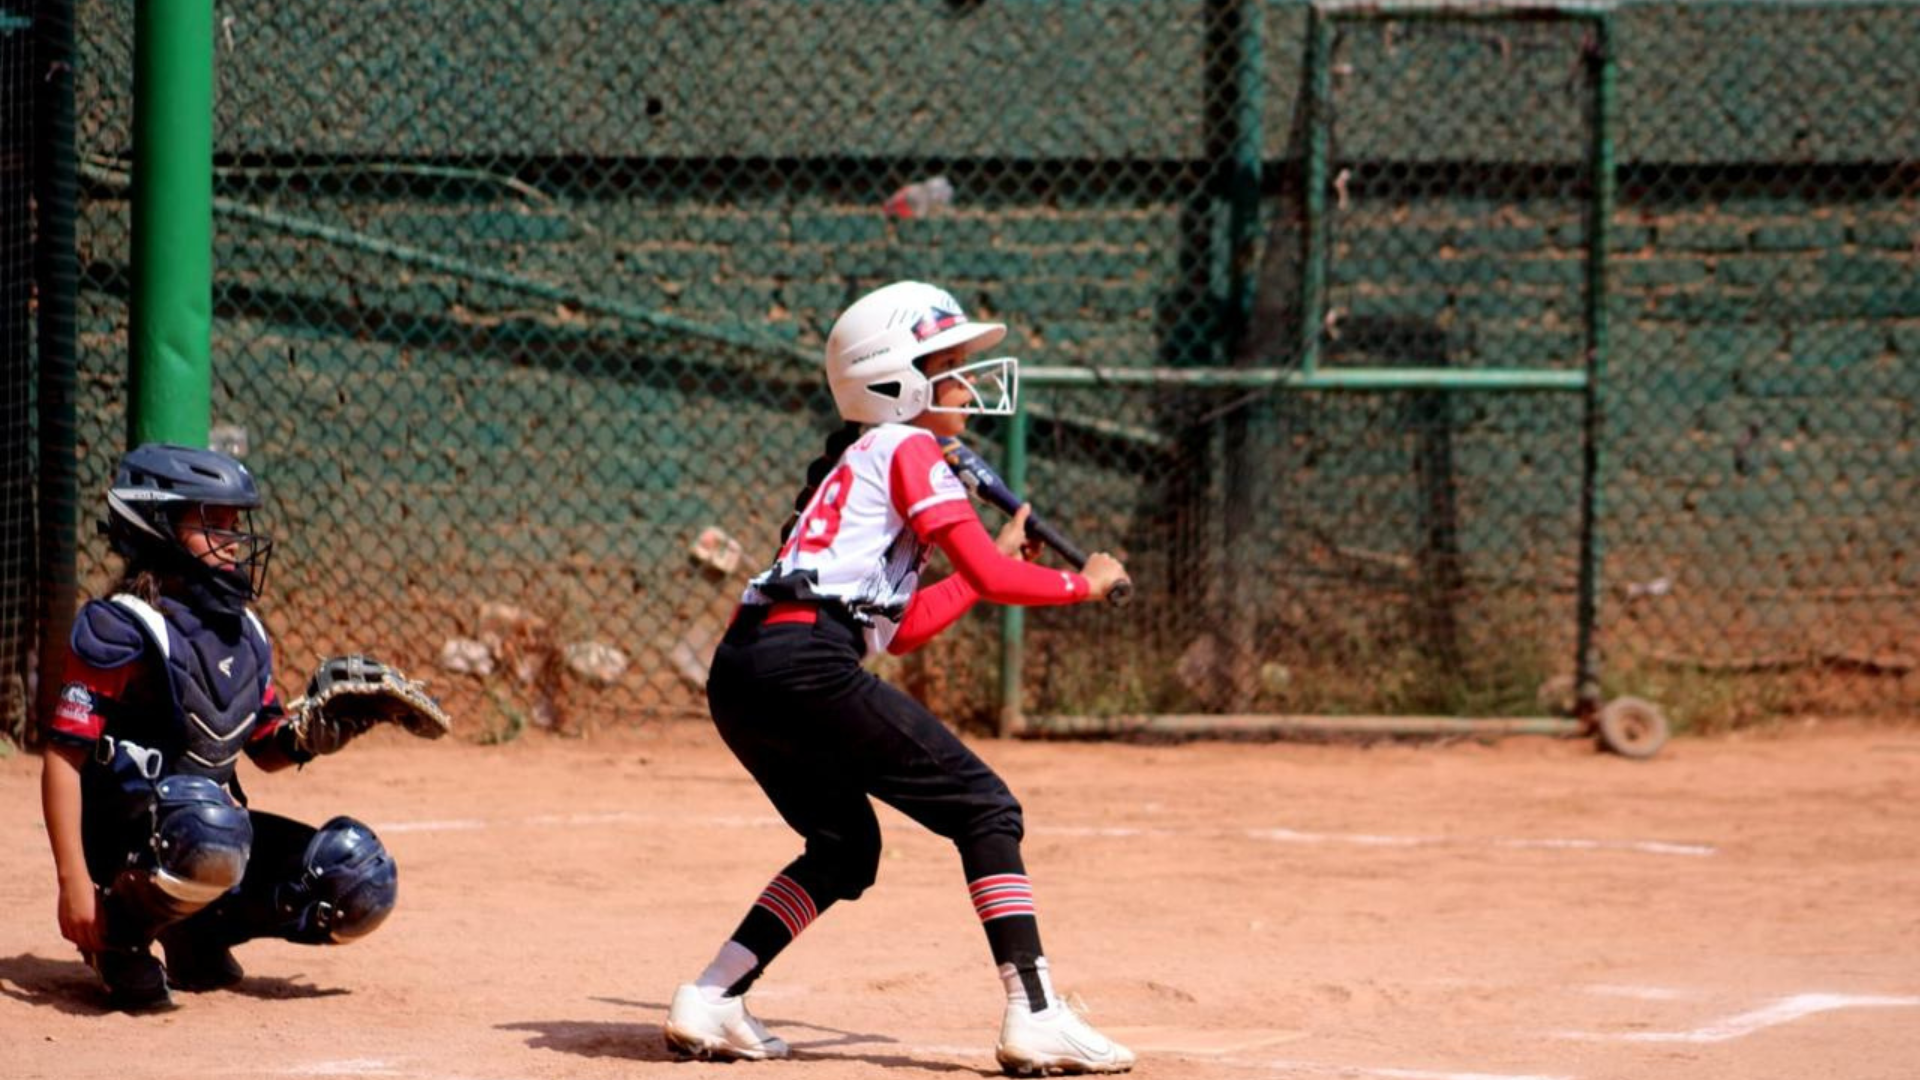 Participan niñas integrantes de Academia de Beisbol Naranjeros - Grupo México en premundial de softbol